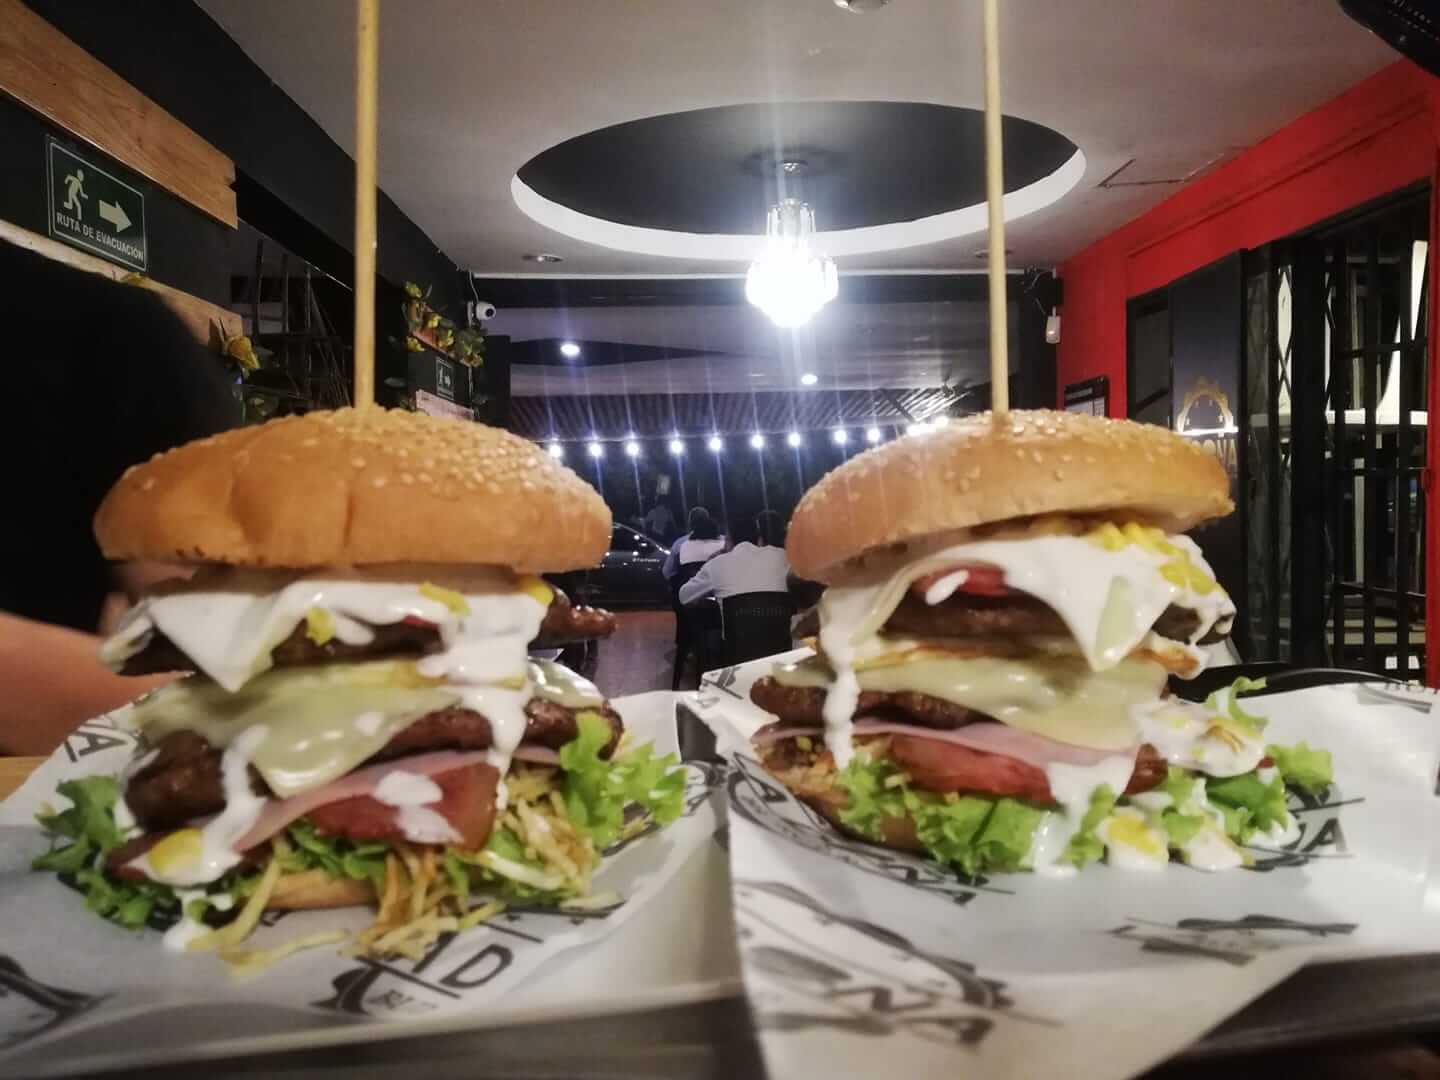 La Doña Burger, la pionera de las hamburguesas picadas